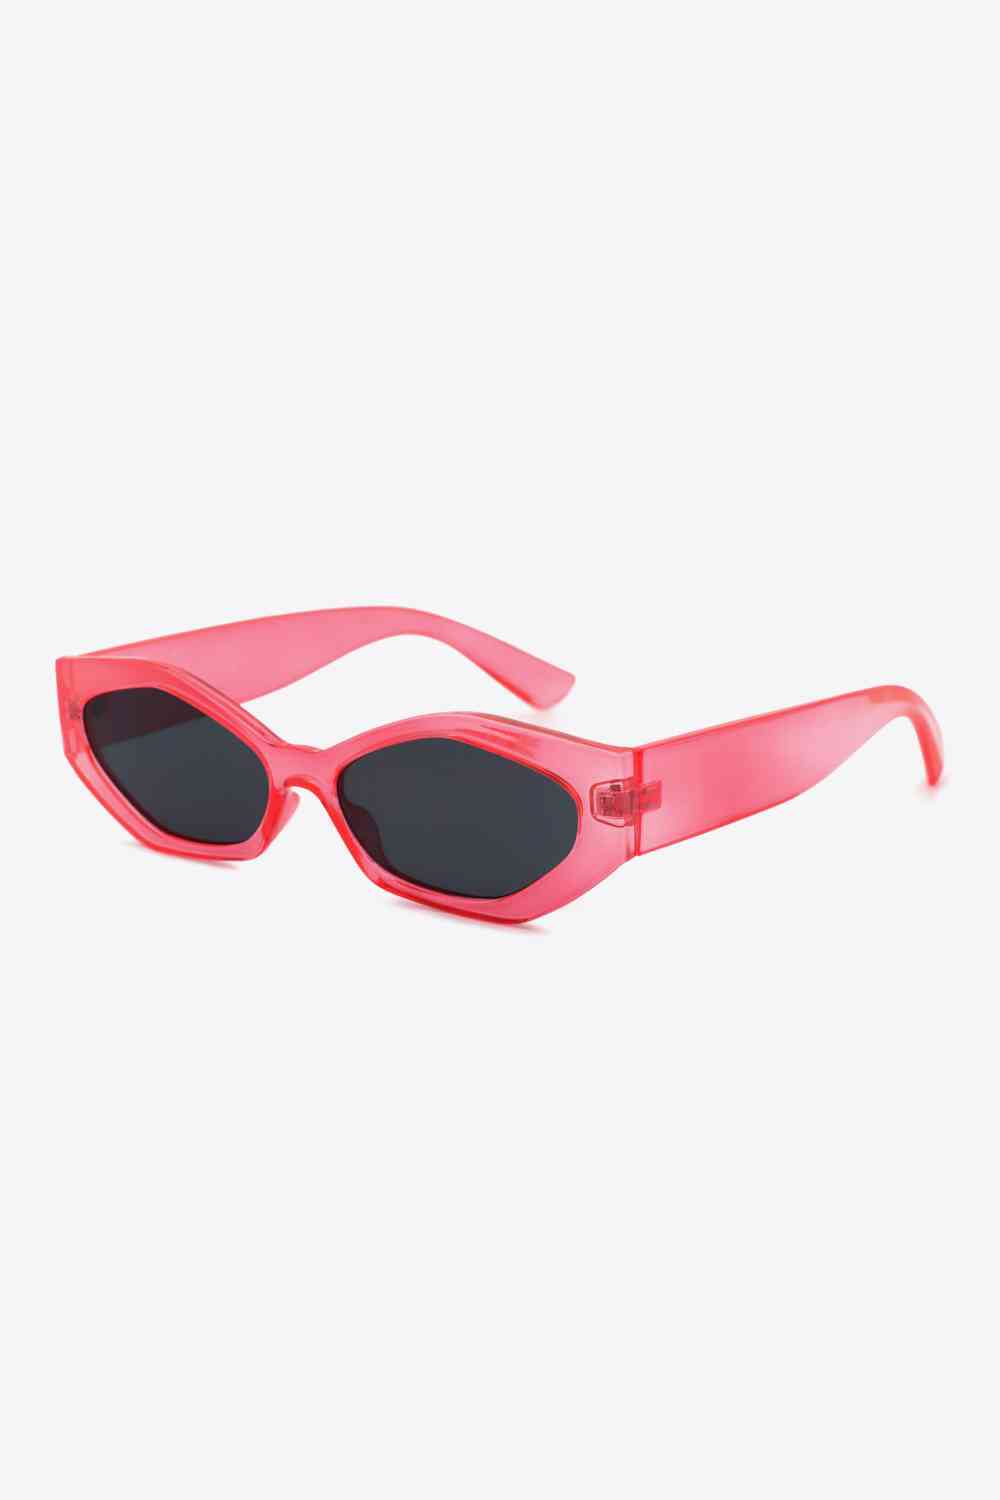 TEEK - Sautee Sis Sunglasses EYEGLASSES TEEK Trend Scarlett  